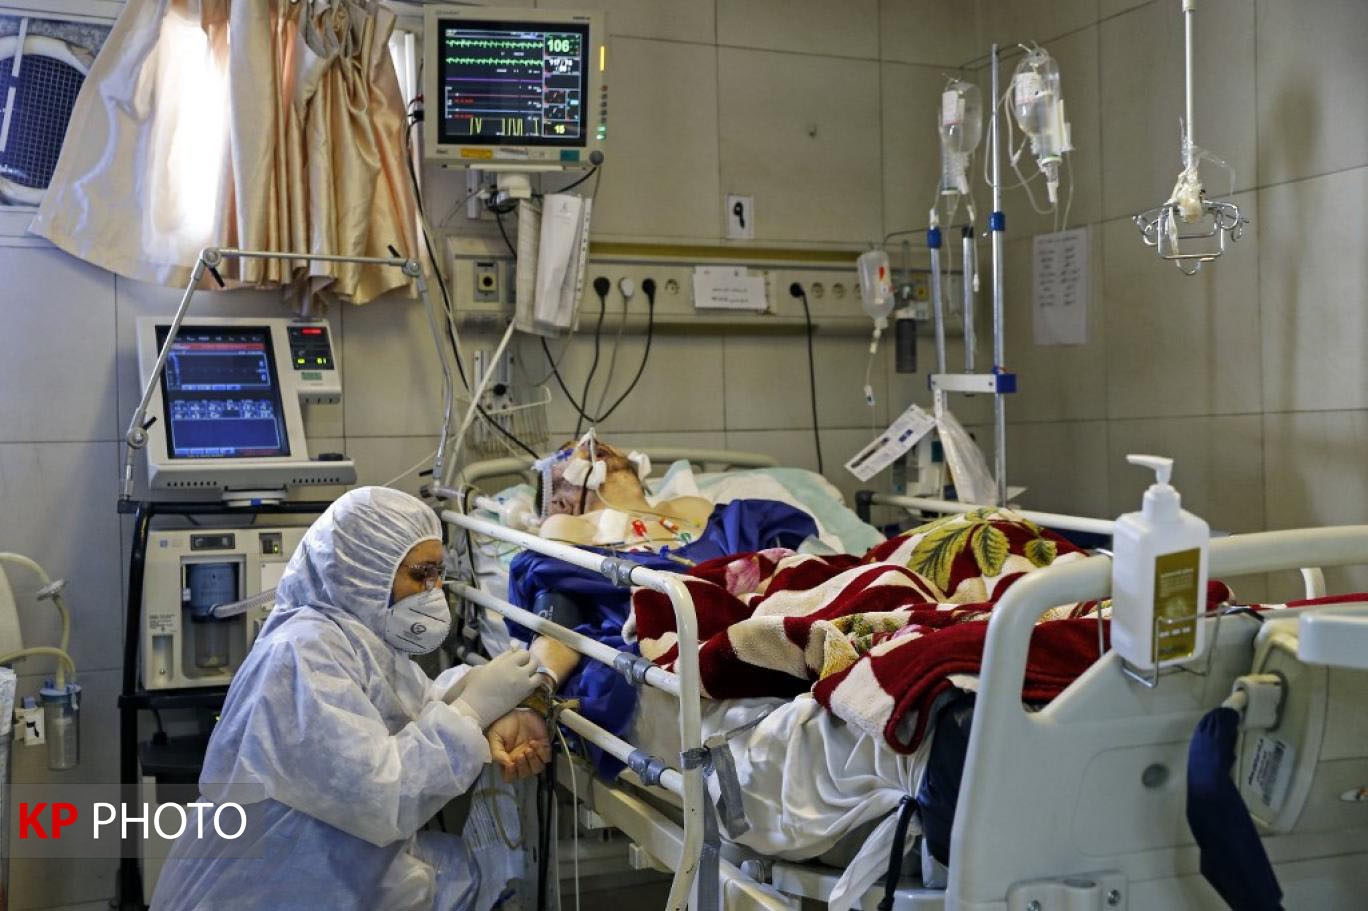 170بیمار کرونایی در کردستان بستری هستند/شناسایی 13 بیمار جدید